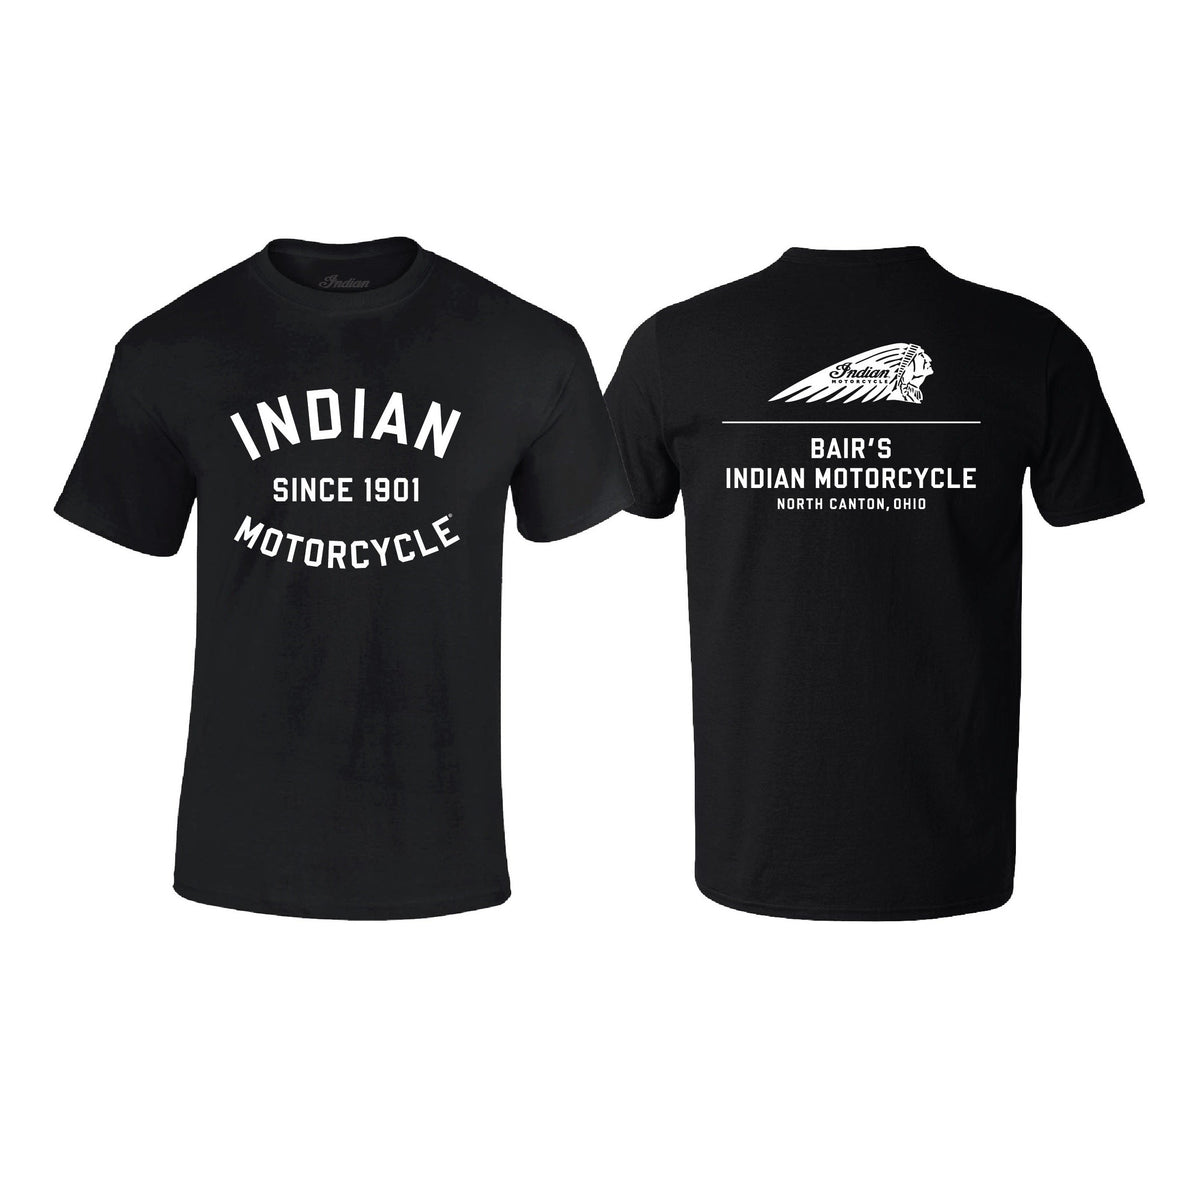 Bair’s Indian Motorcycle T-Shirt, Black/White